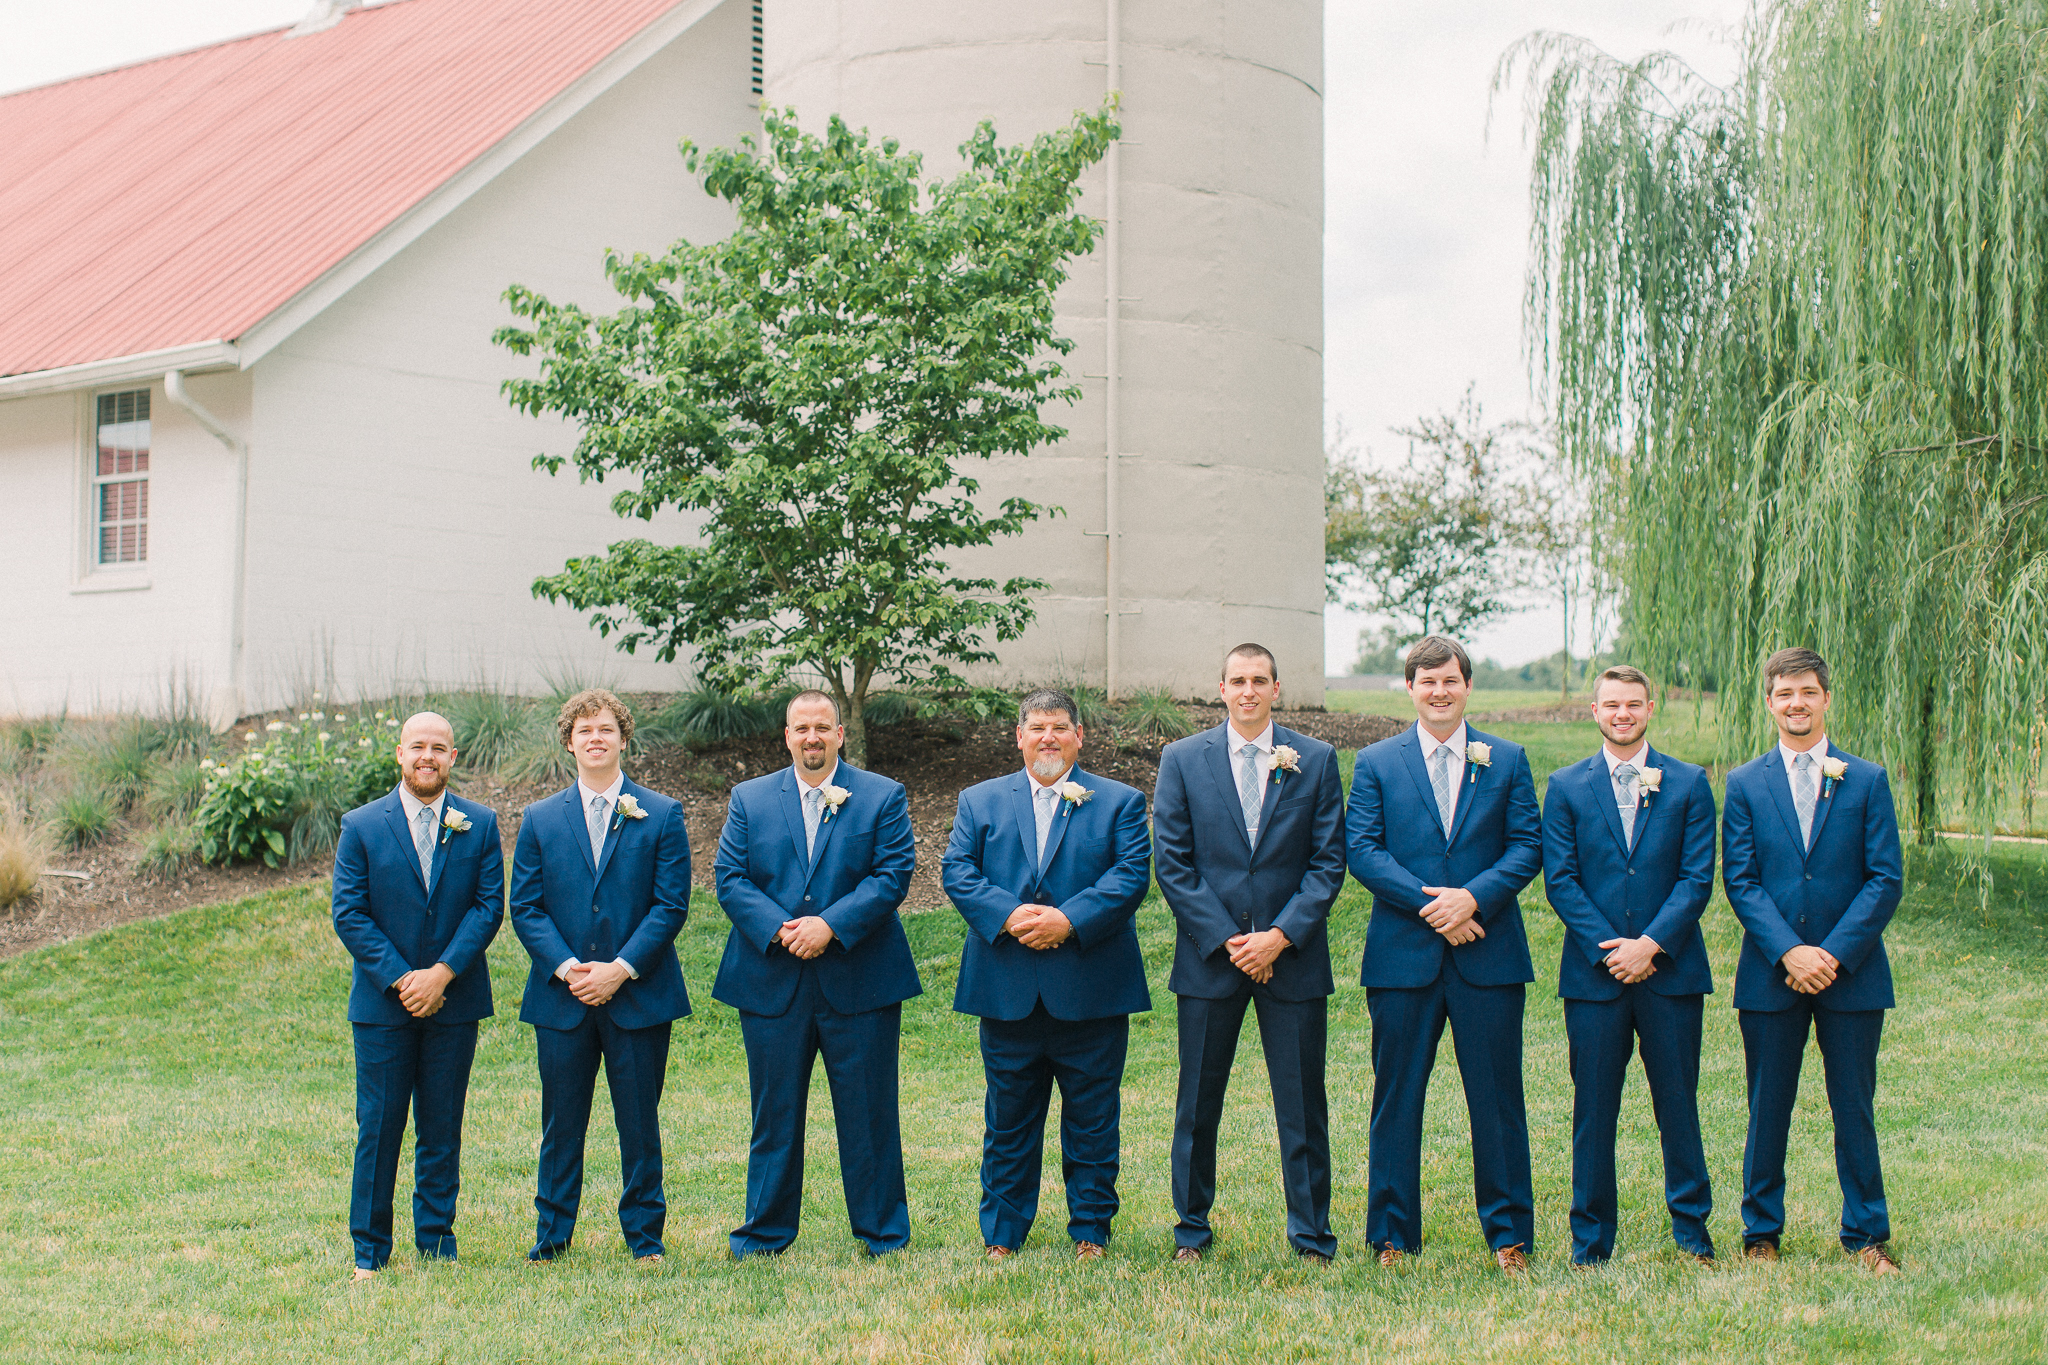 groomsmen navy suits